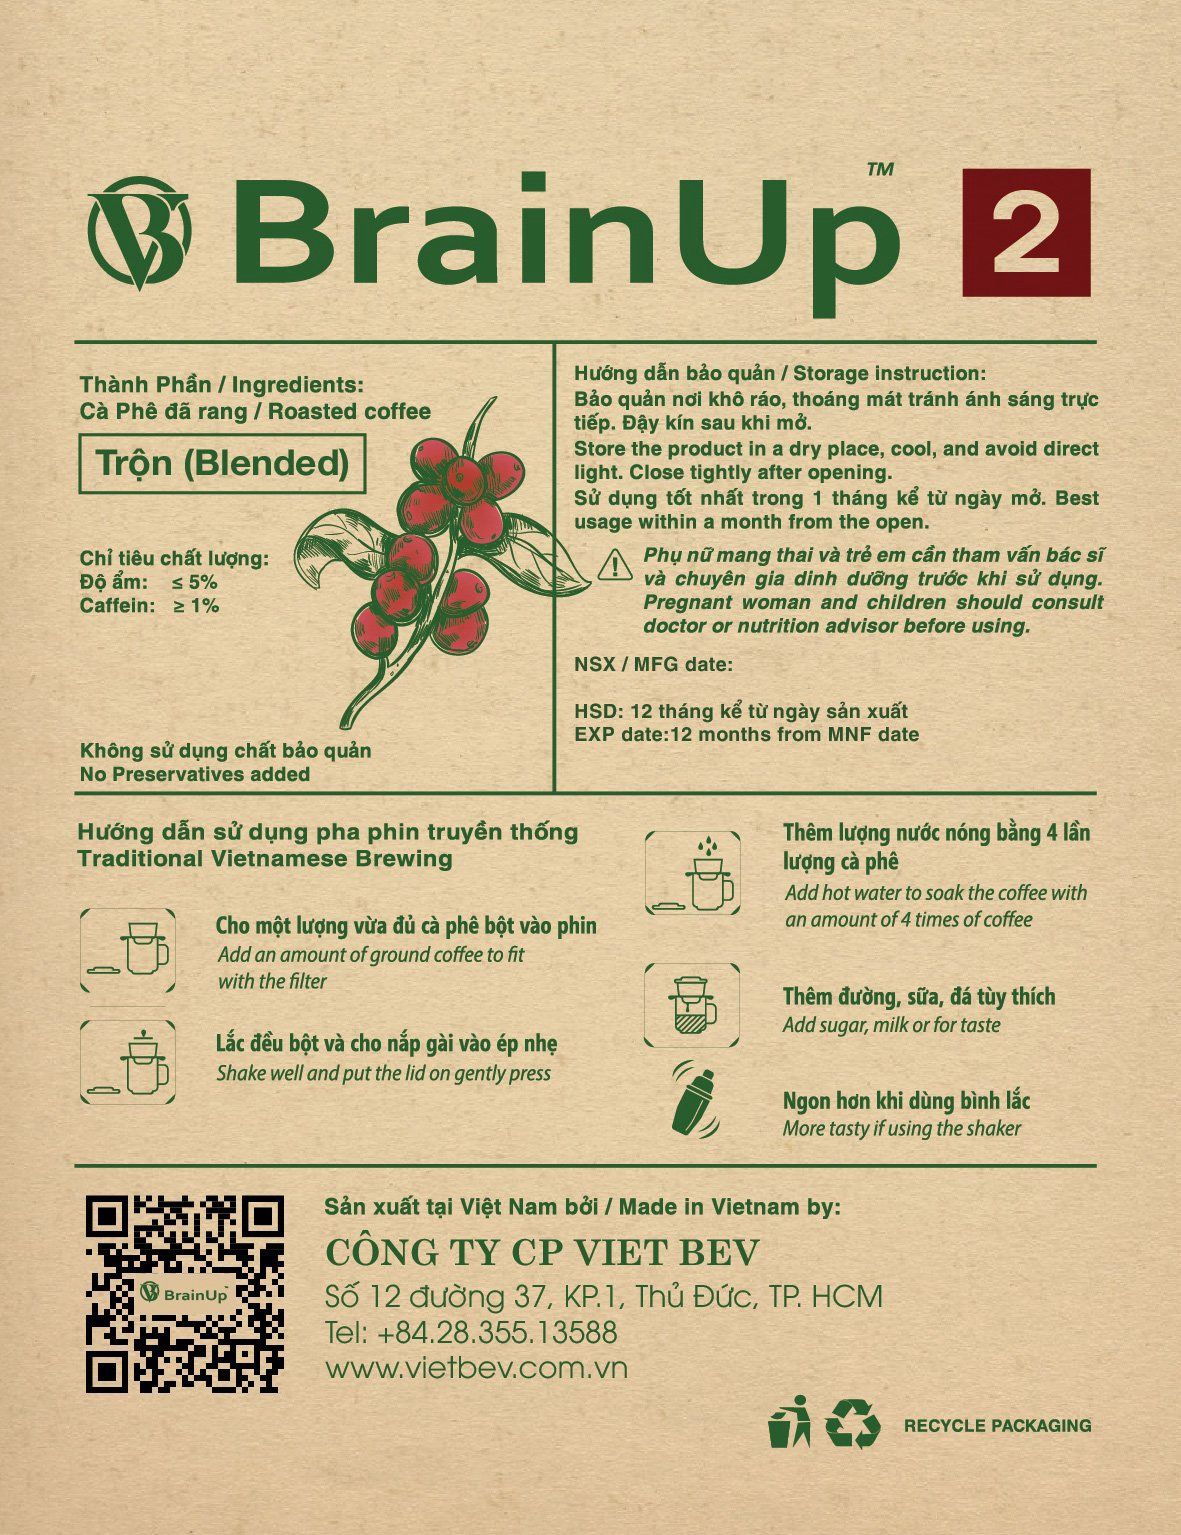  Brainup 2 